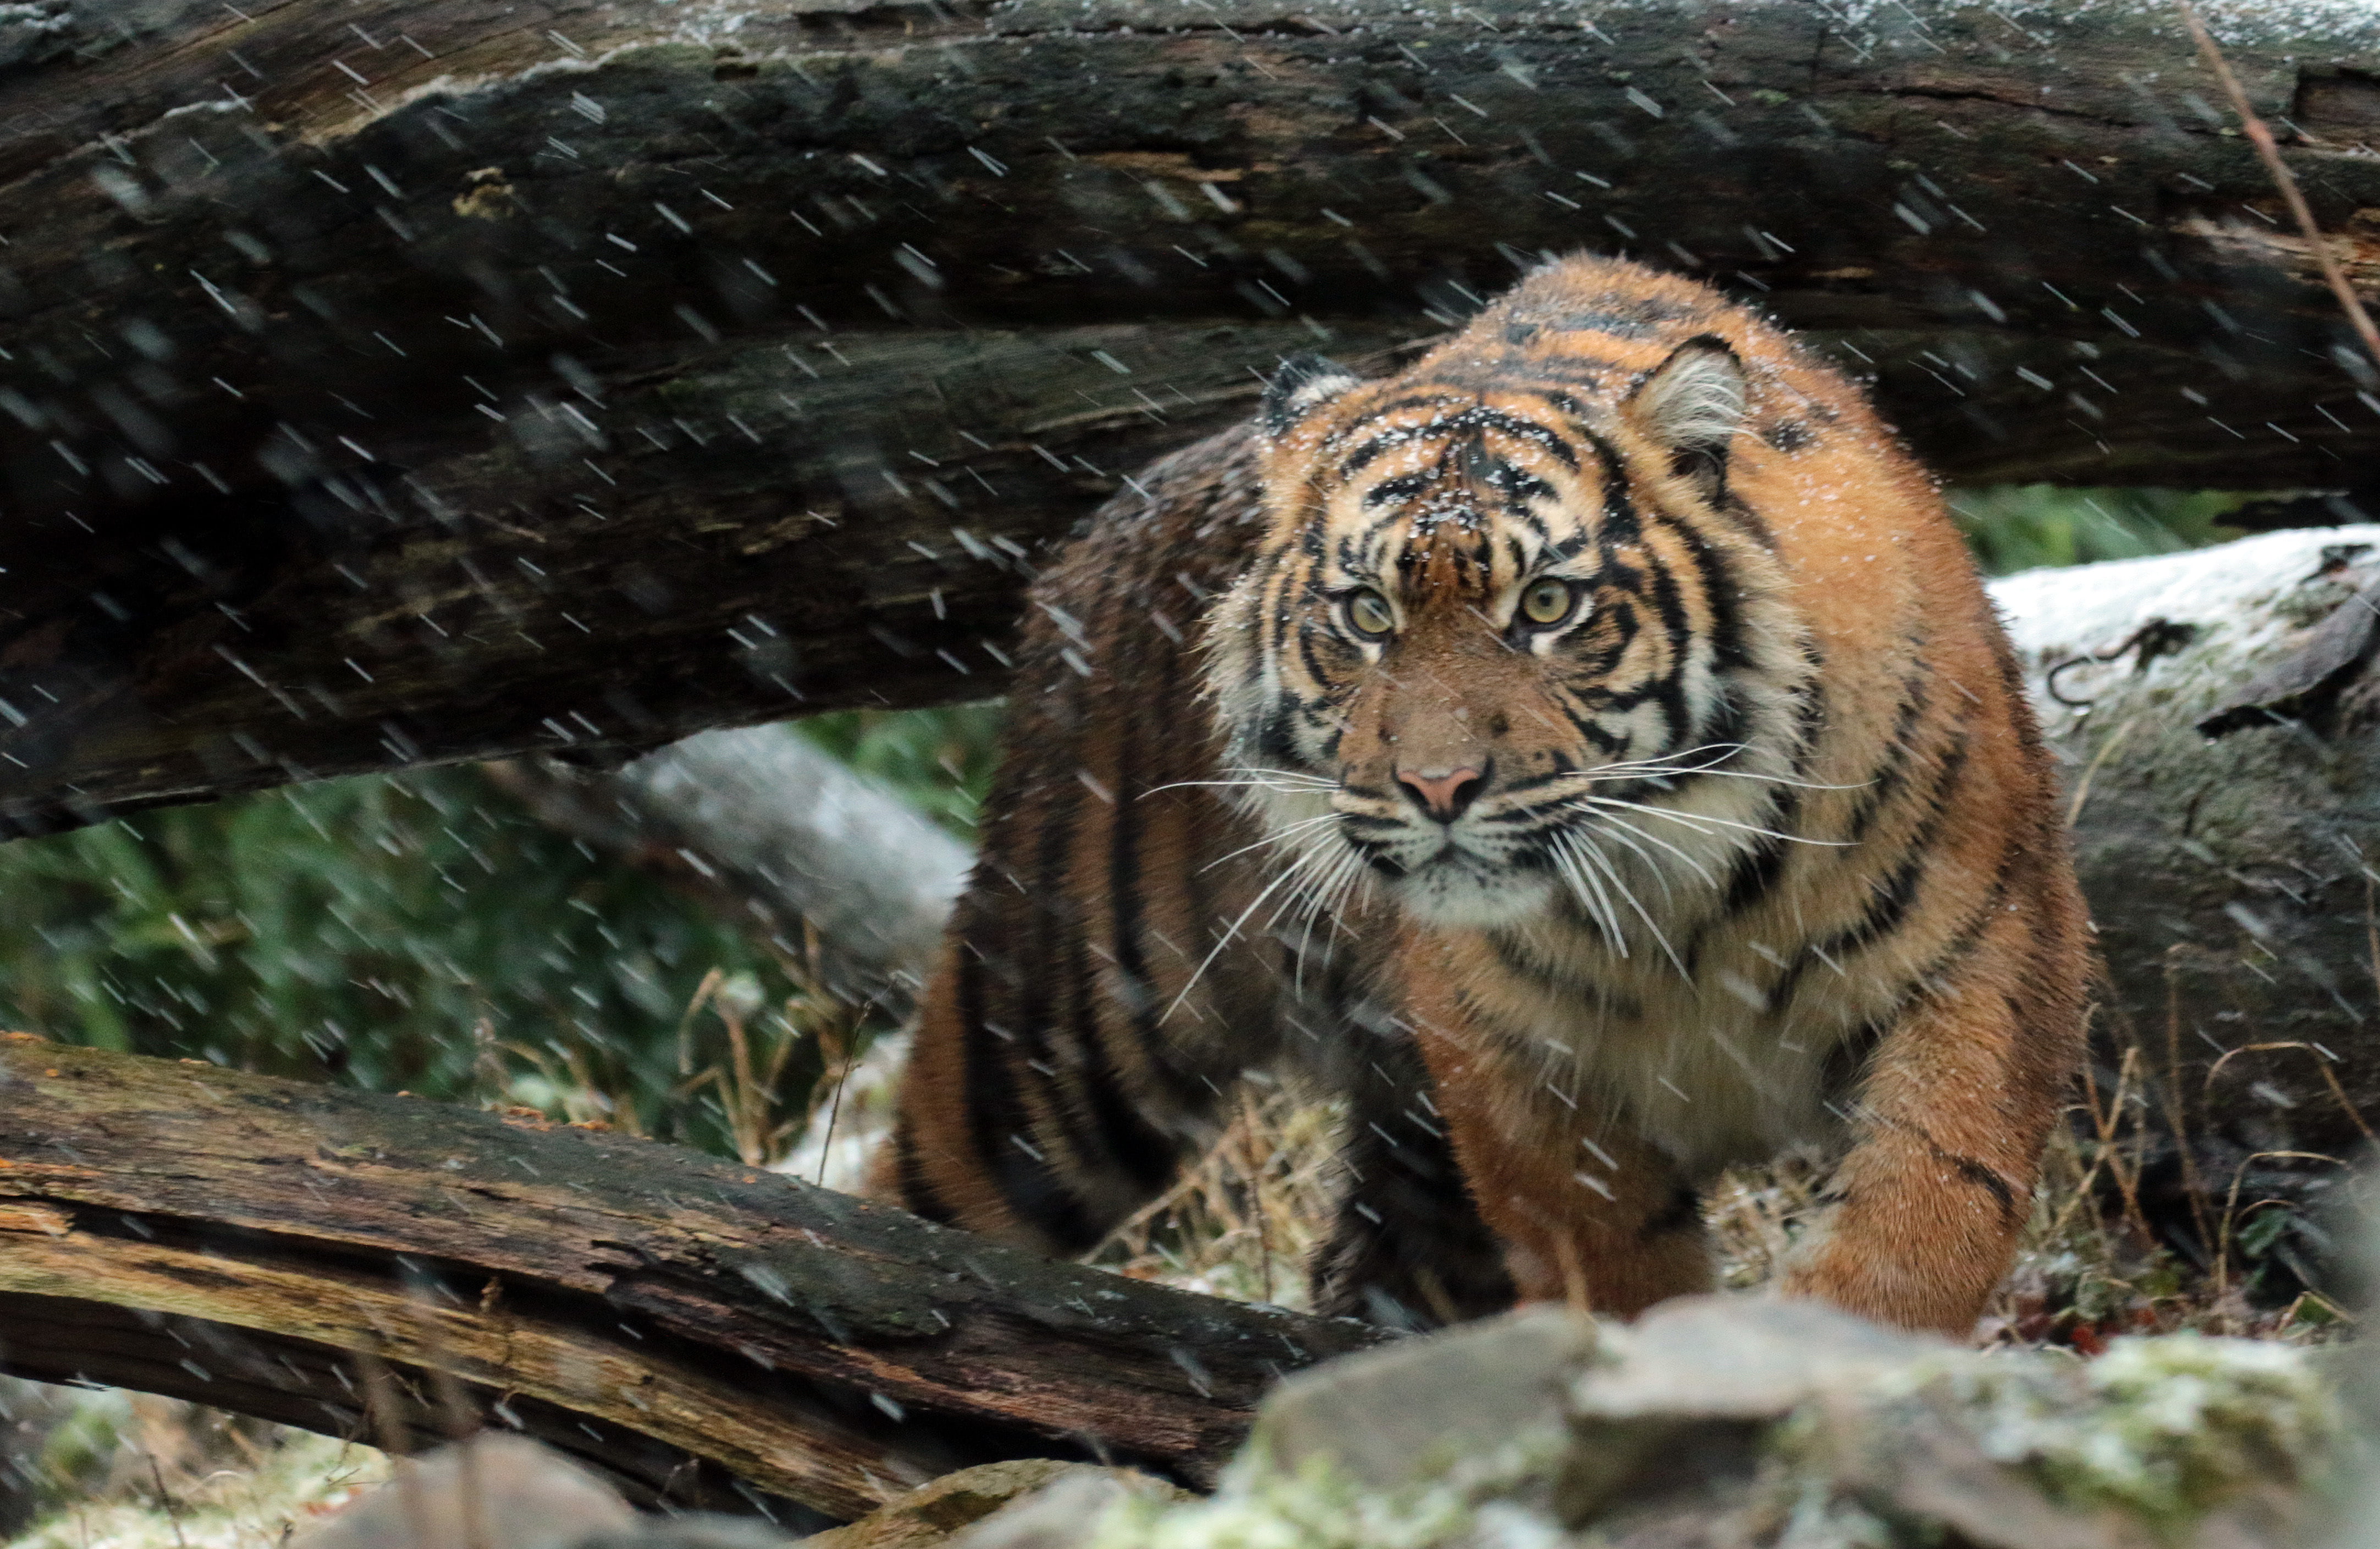 orange Tiger on brown wooden tree trunk, Sumatran tiger, Wild tiger